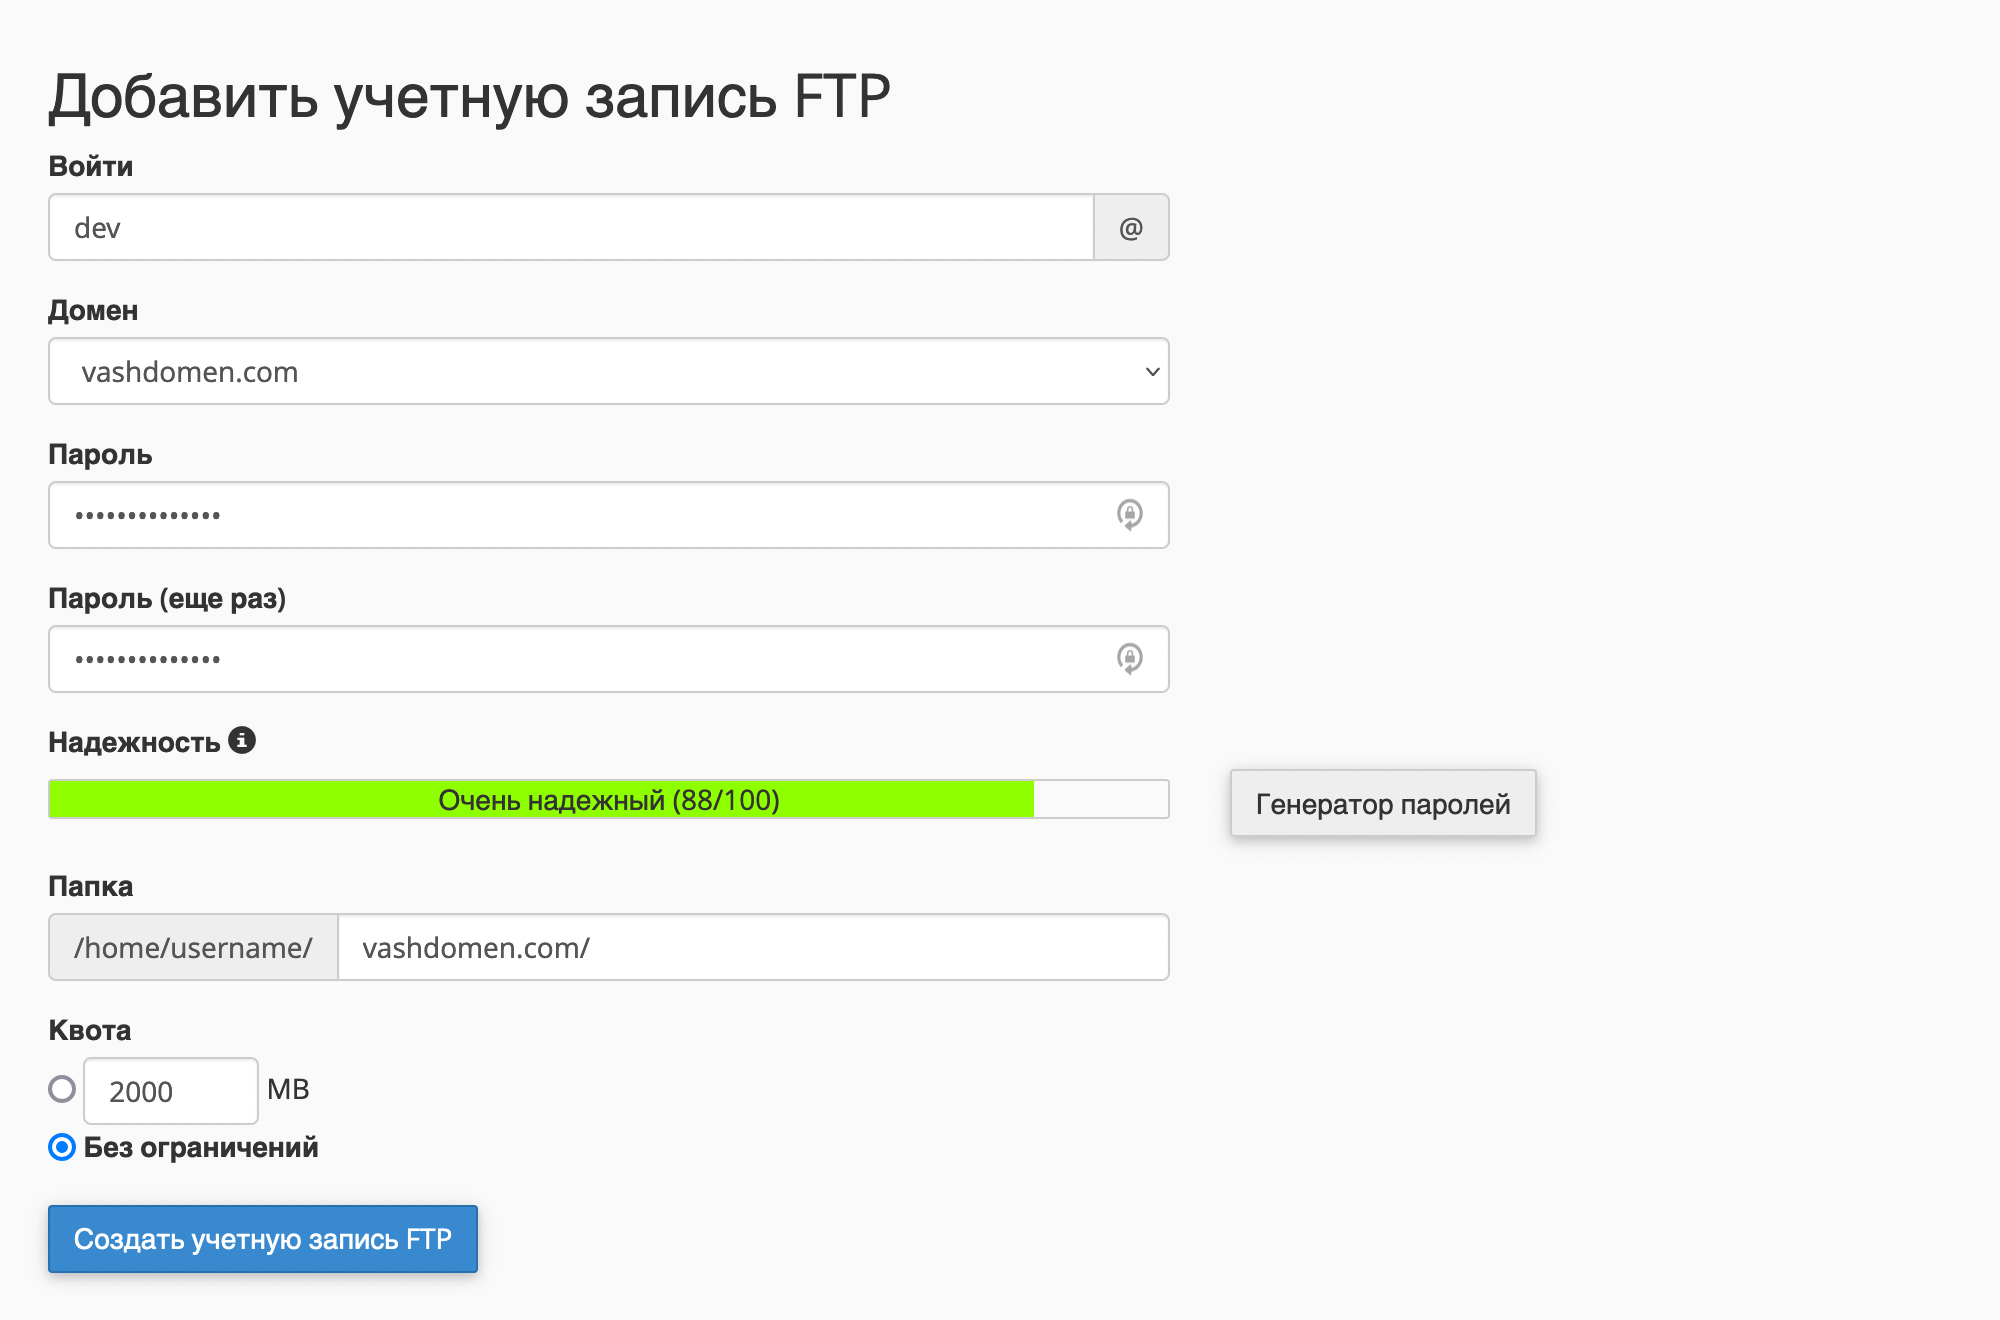 Интерфейс «Добавить учетную запись FTP» в cPanel